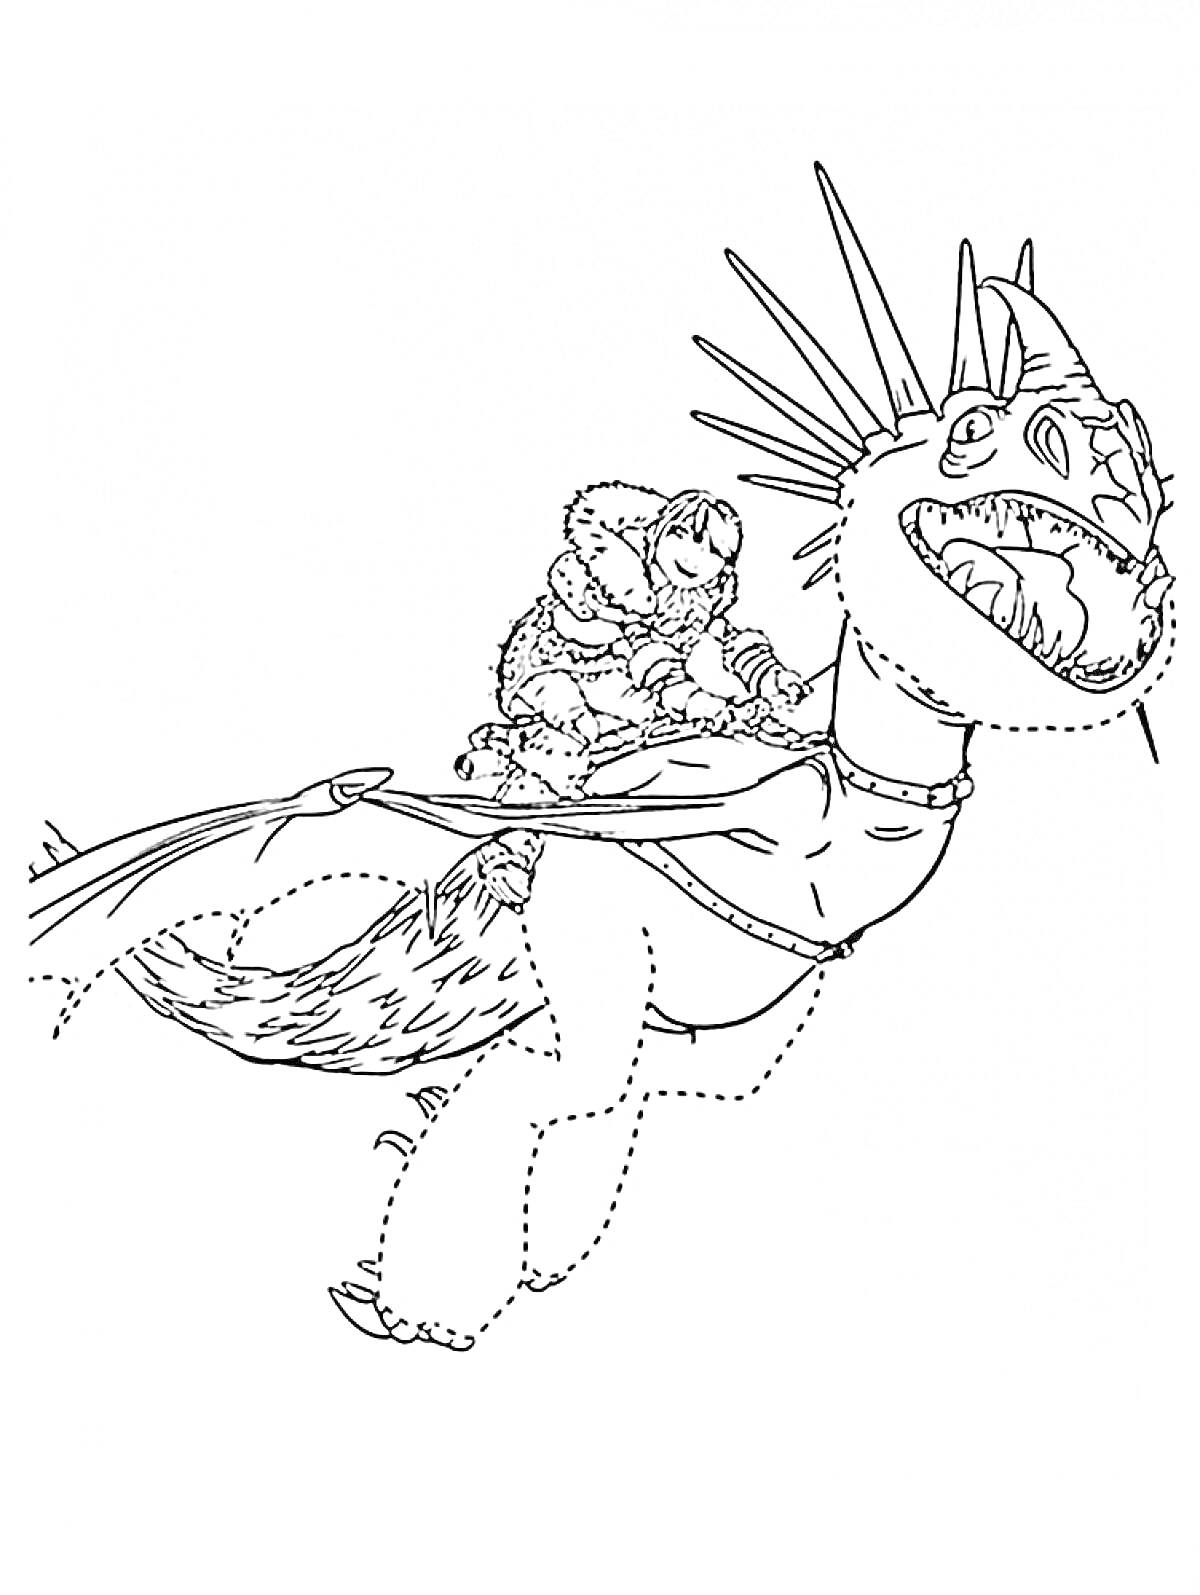 Раскраска Всадник в шерстяной одежде верхом на драконе с шипами